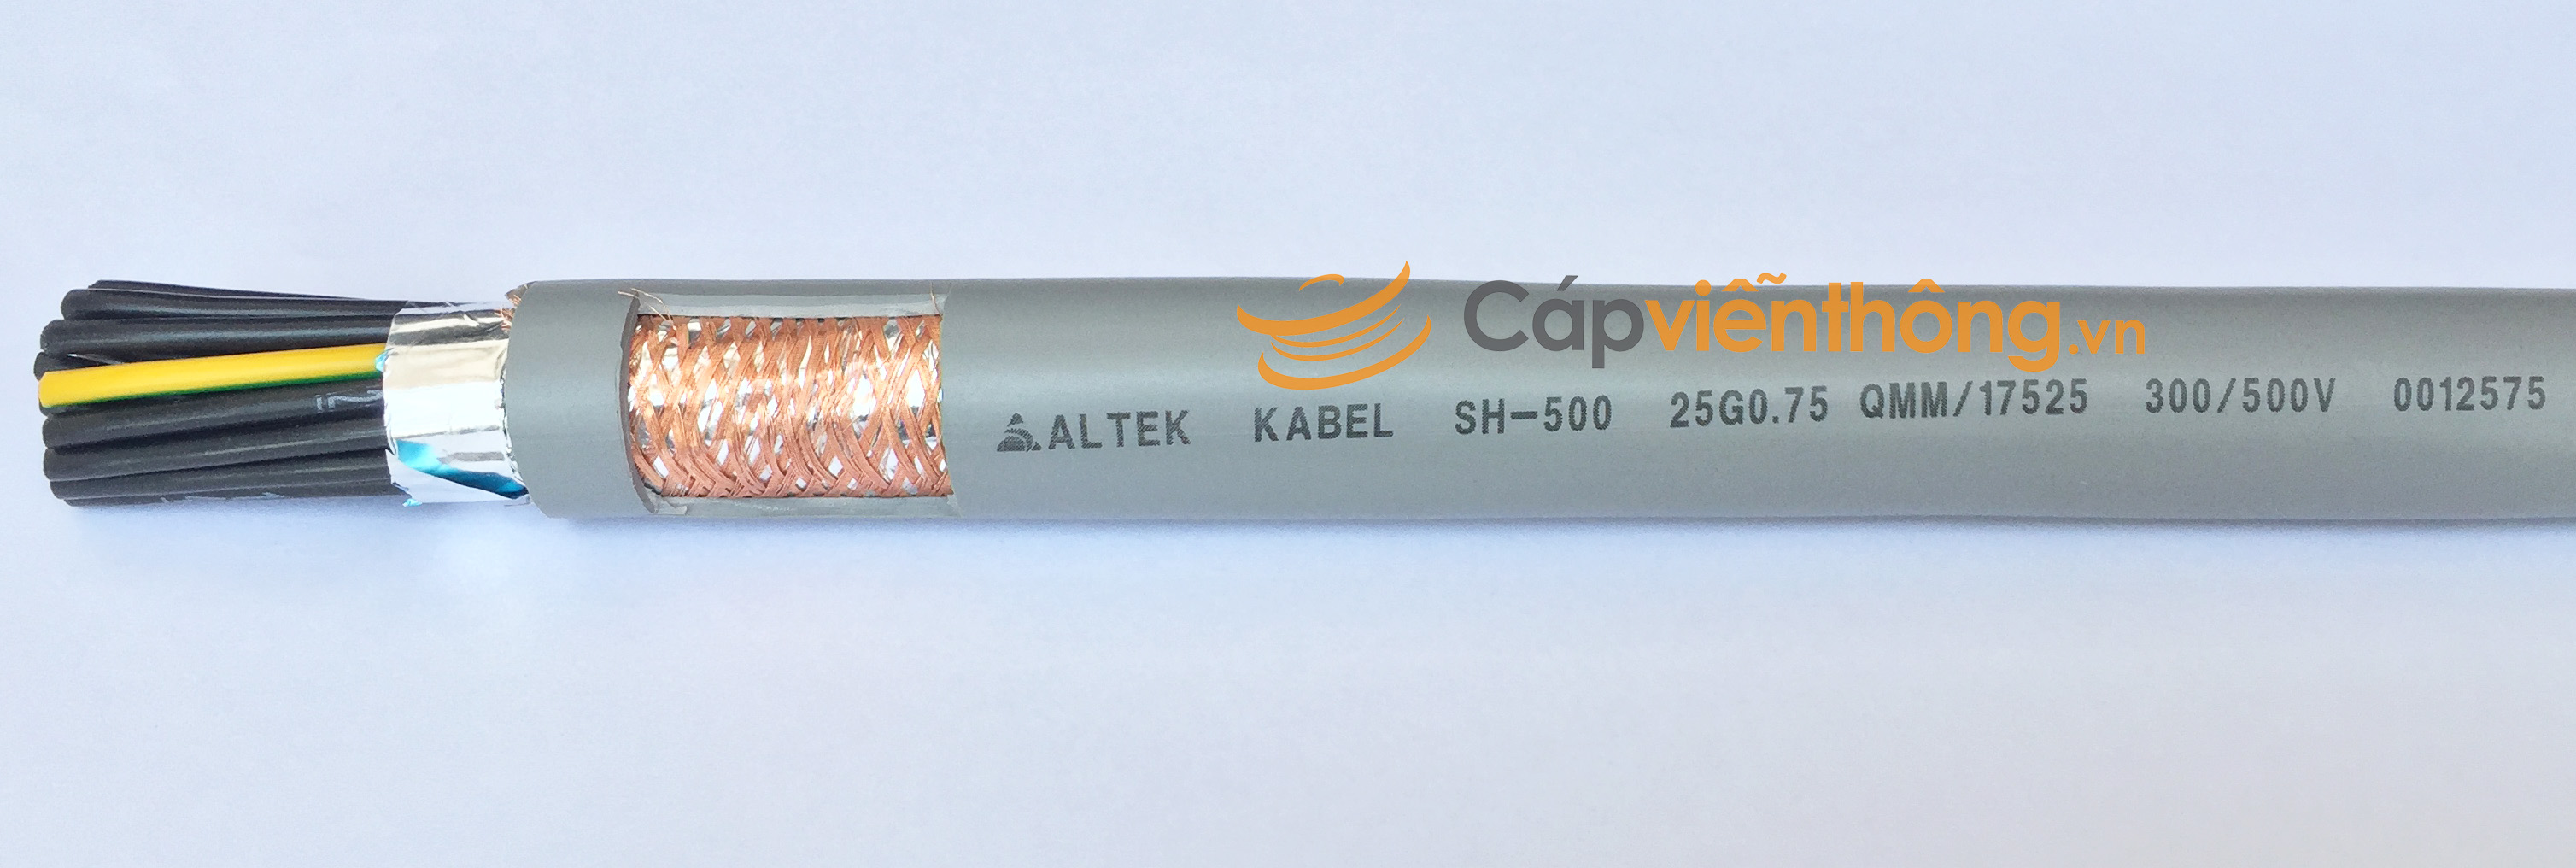 Cáp điều khiển có lưới Altek Kabel SH-500 25G 0.75QMM